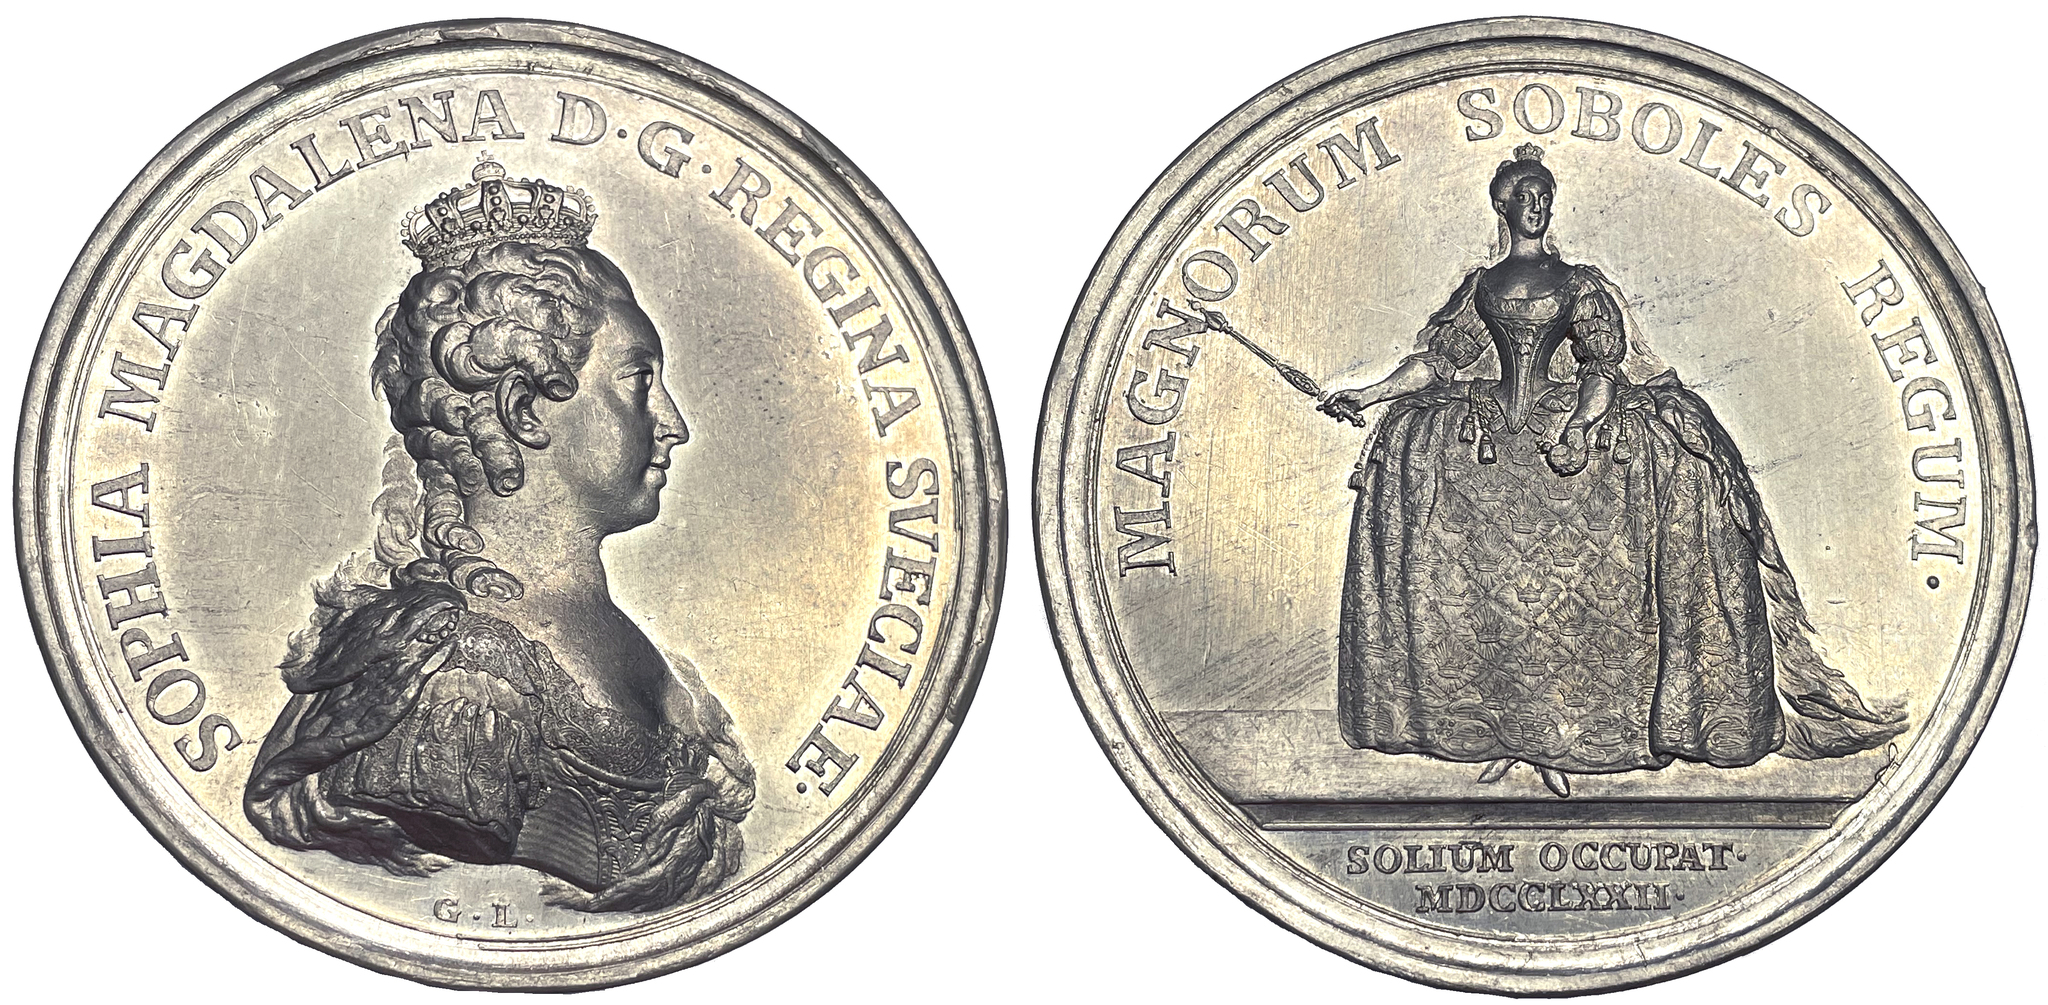 Sophia Magadalenas kröning 1772 av Ljungberger - PRAKTEXEMPLAR i tenn - RRR